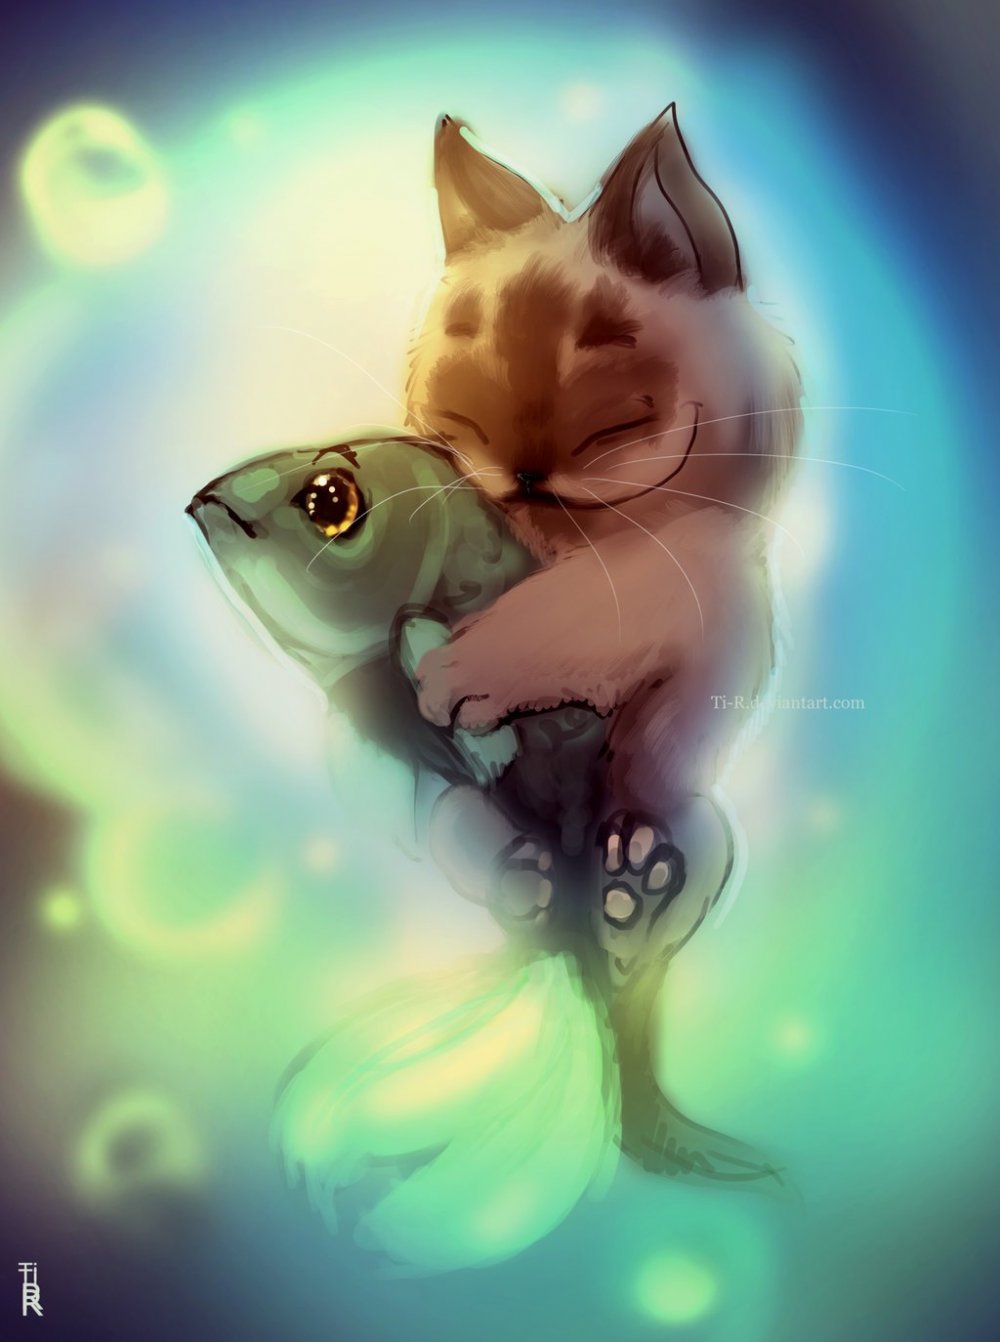 Рыбка для кошки